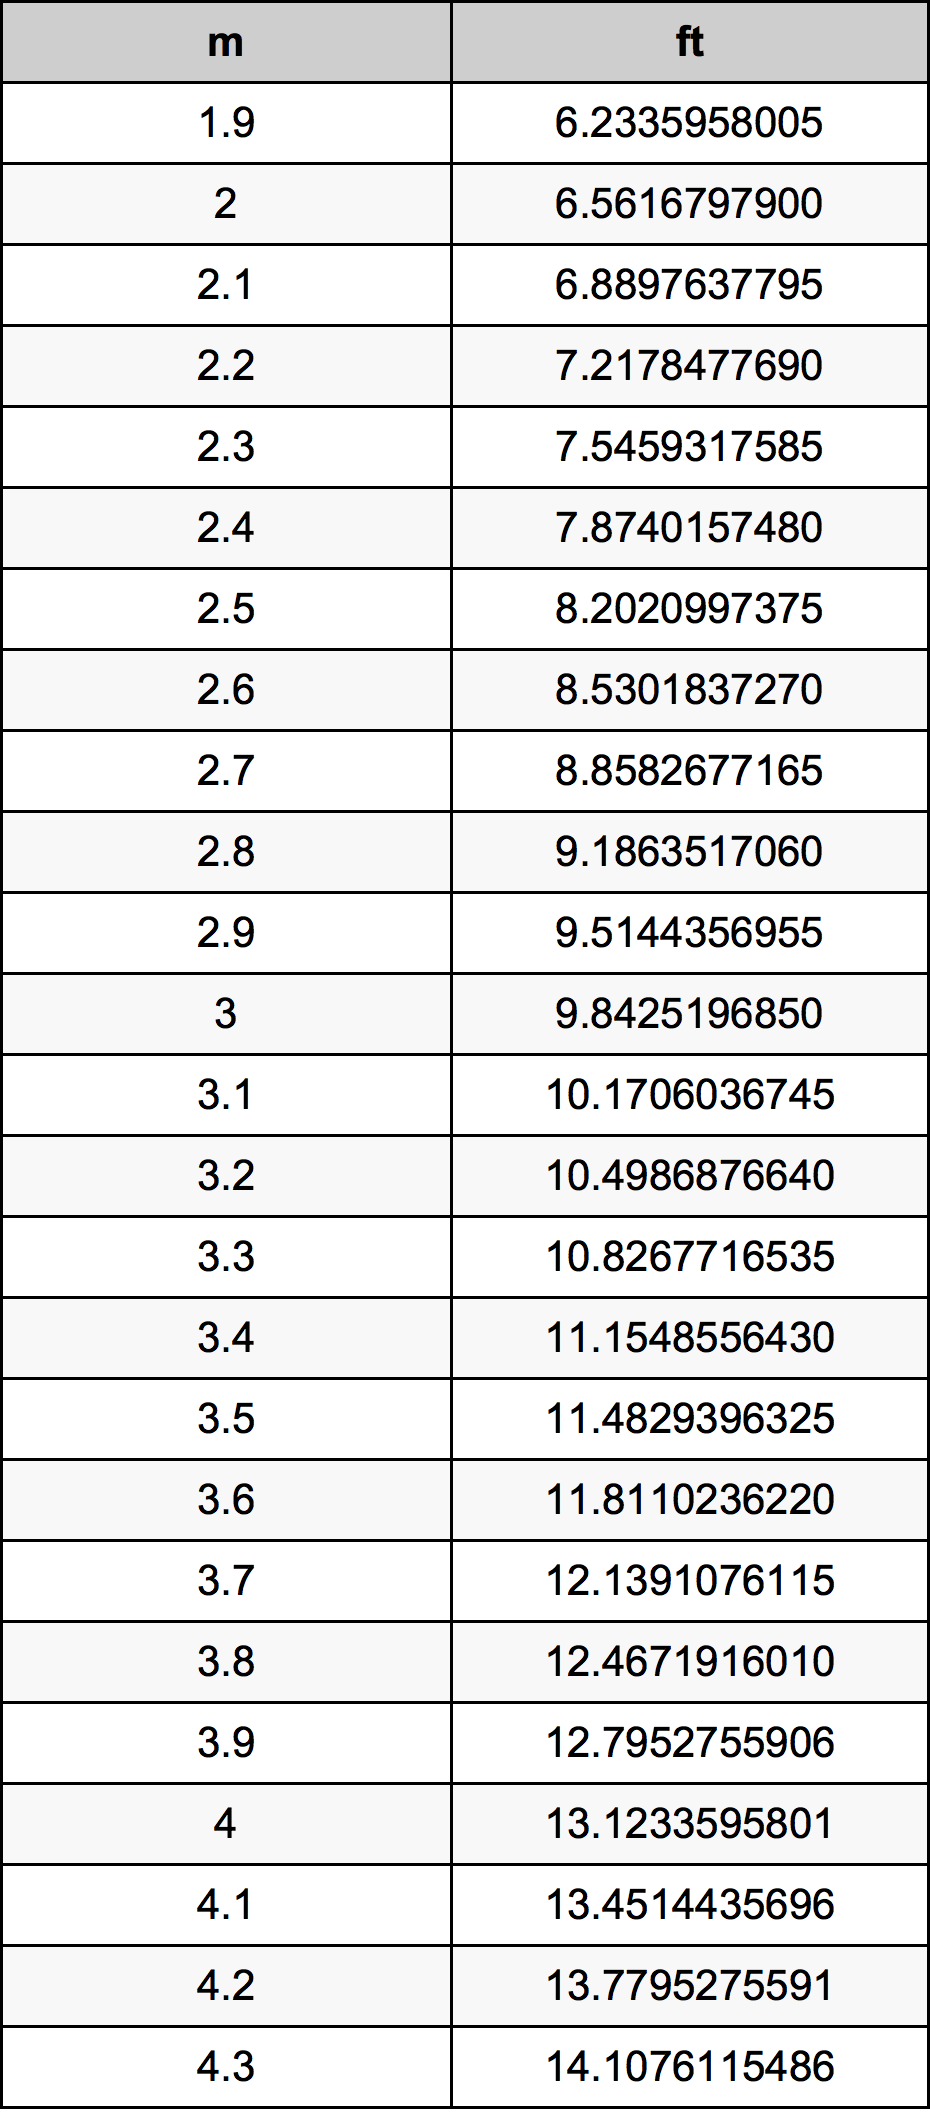 3.1 Metru tabelul de conversie